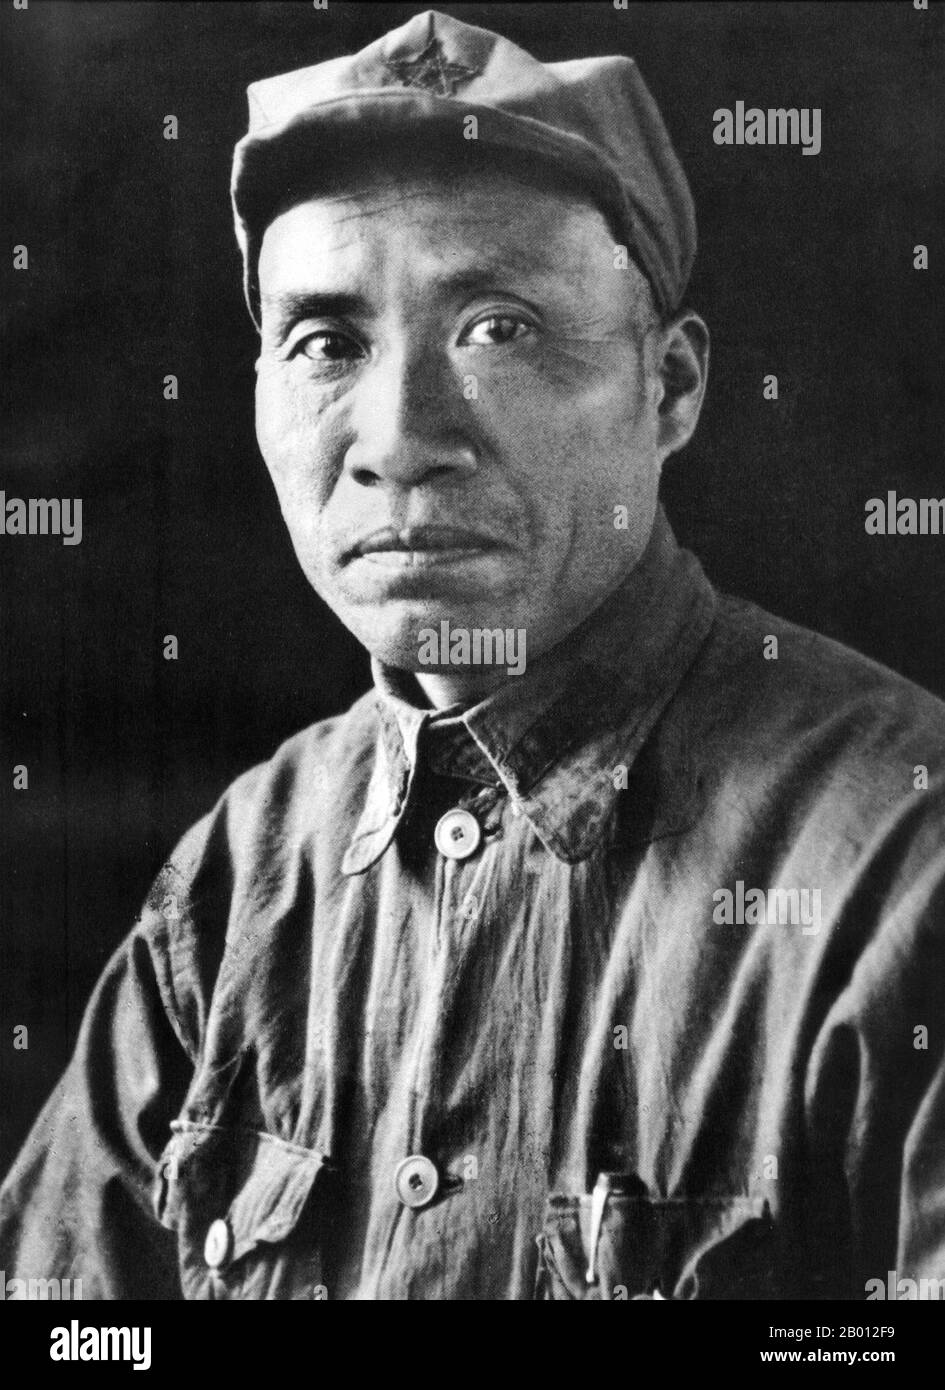 China: Zhu De (1 de diciembre de 1886 – 6 de julio de 1976) fue un general comunista y genio militar chino, del siglo 20th. Zhu De era un líder militar comunista chino y un estadista. Es considerado como el fundador del Ejército Rojo Chino (el precursor del Ejército Popular de Liberación) y el táctico que diseñó la victoria de la República Popular de China durante la Guerra Civil China. Foto de stock